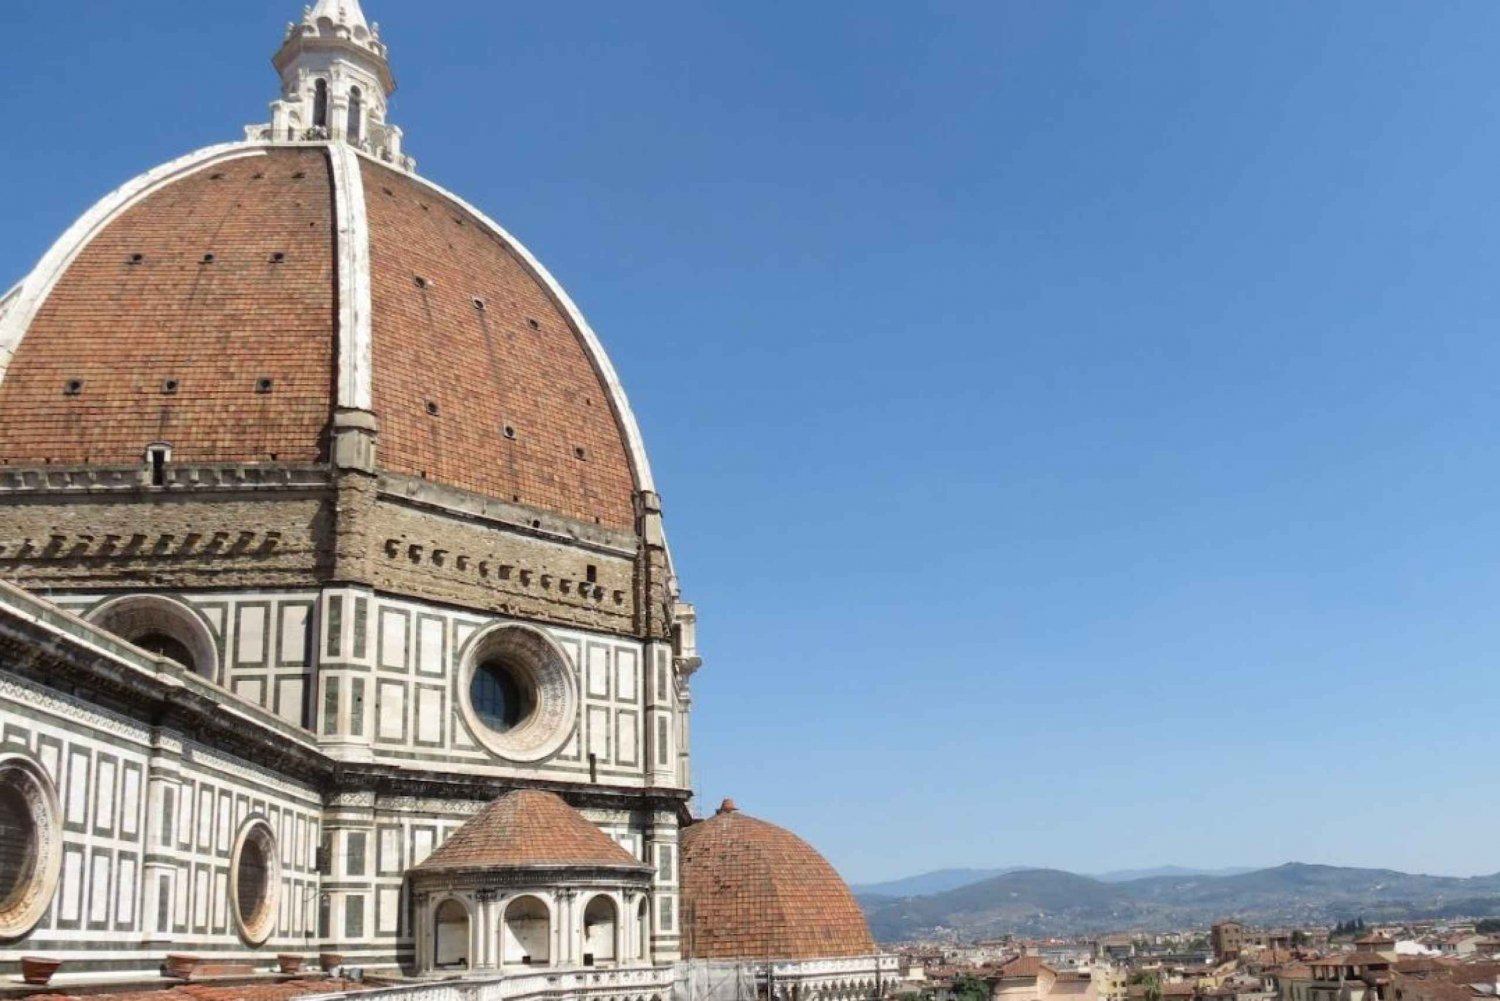 Toegangskaarten voor Brunelleschi's Cupola in Florence